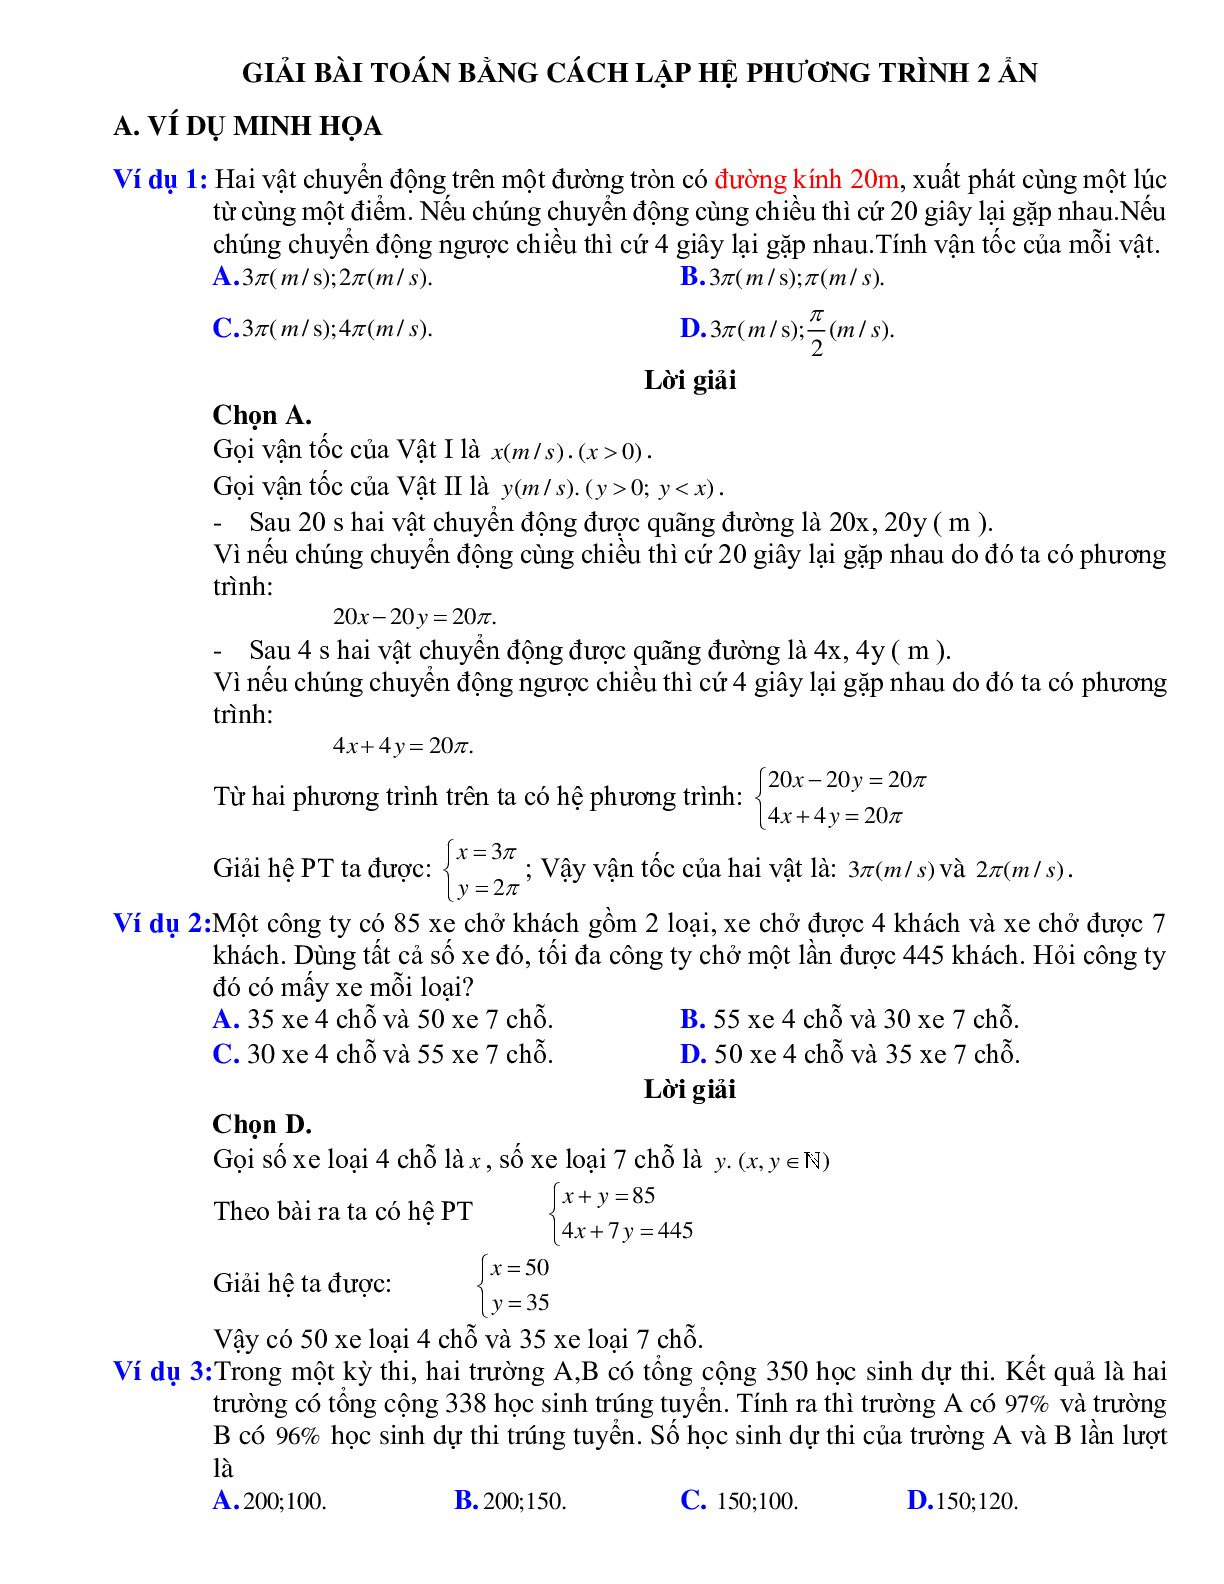 Giải bài toán bằng cách hệ lập phương trình hai ẩn (trang 1)